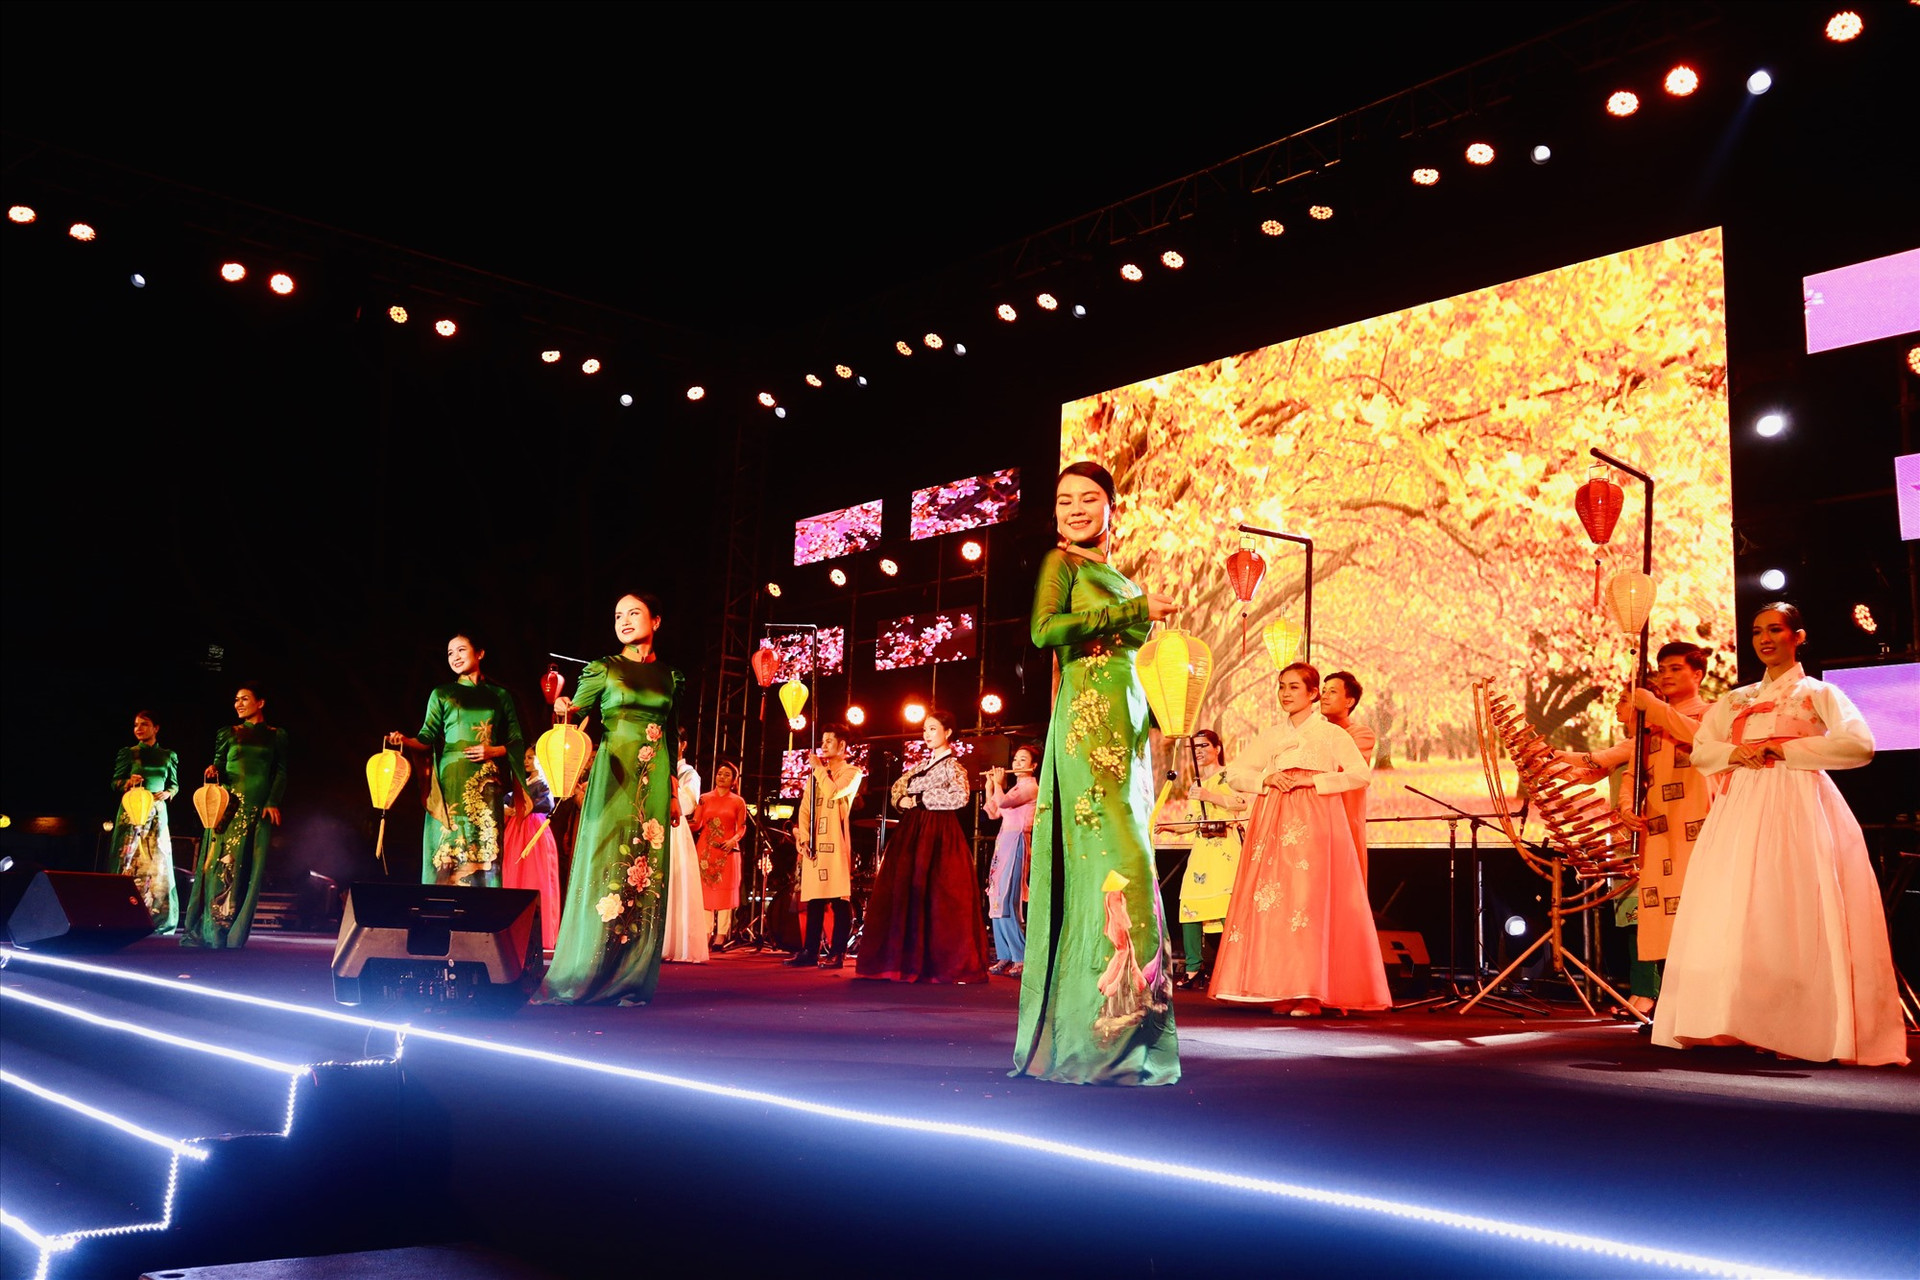 Trình diễn trang phục truyền thống Việt Nam - Hàn Quốc trong đêm bế mạc. Ảnh: S.L